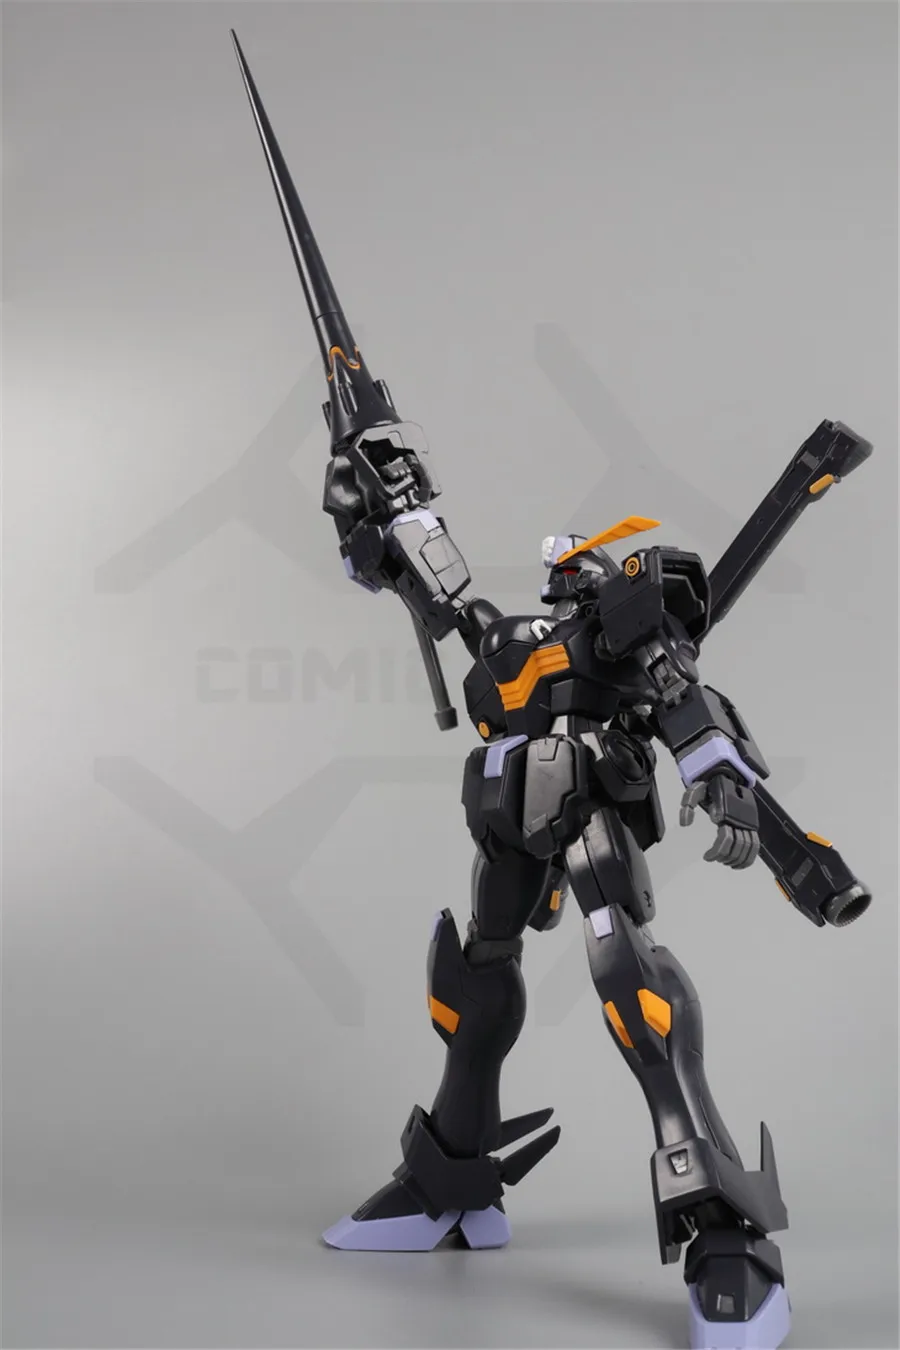 Comic Club в наличии MG 1/100 DABAN Crossbone Gundam X-2 мобильный костюм Робот Модель фигурка аниме экшн-игрушка